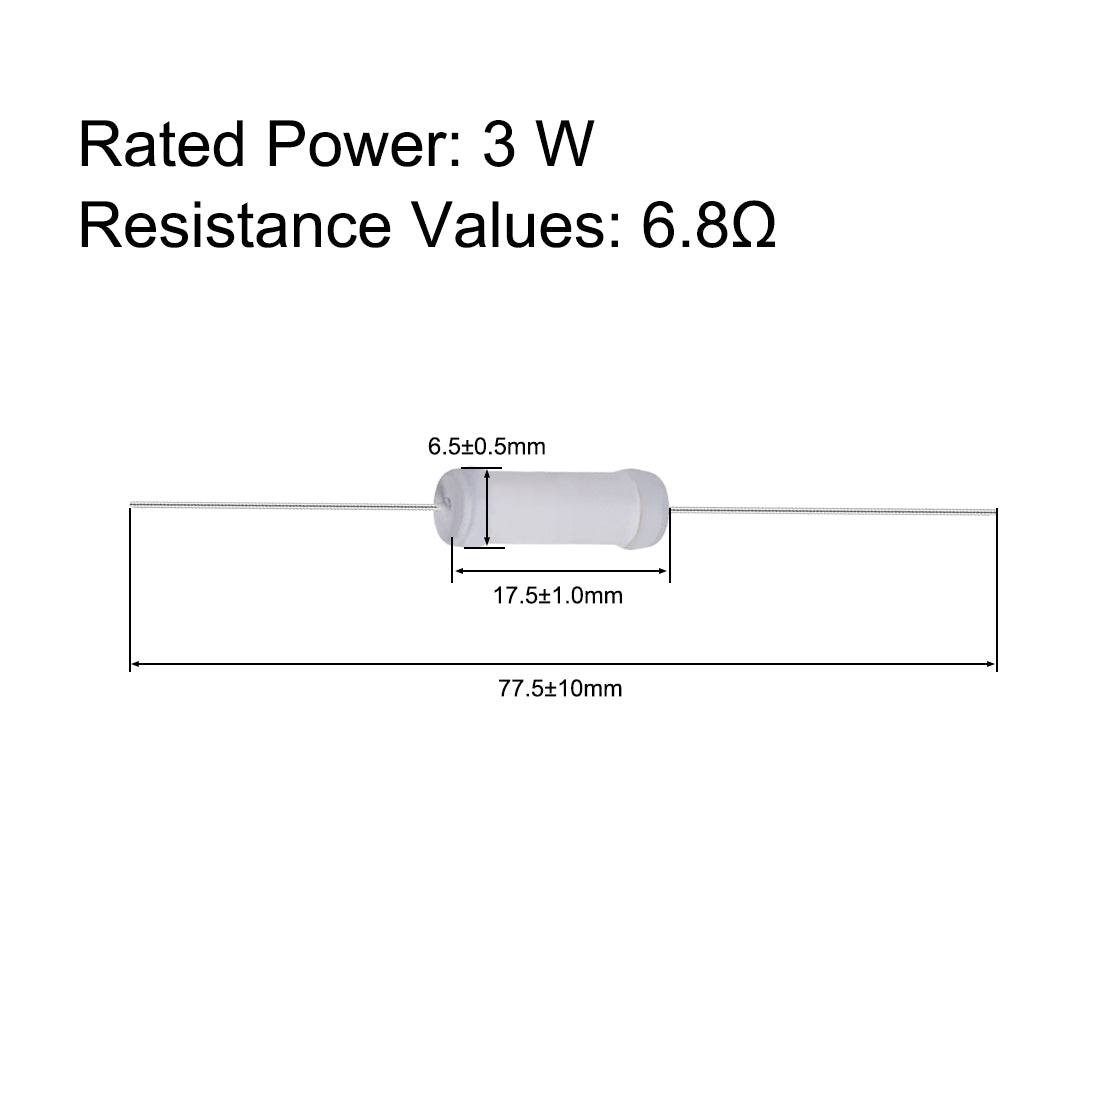 uxcell Uxcell 40pcs 3W 3 Watt Metal Oxide Film Resistor Lead 6.8 Ohm ±5% Tolerance